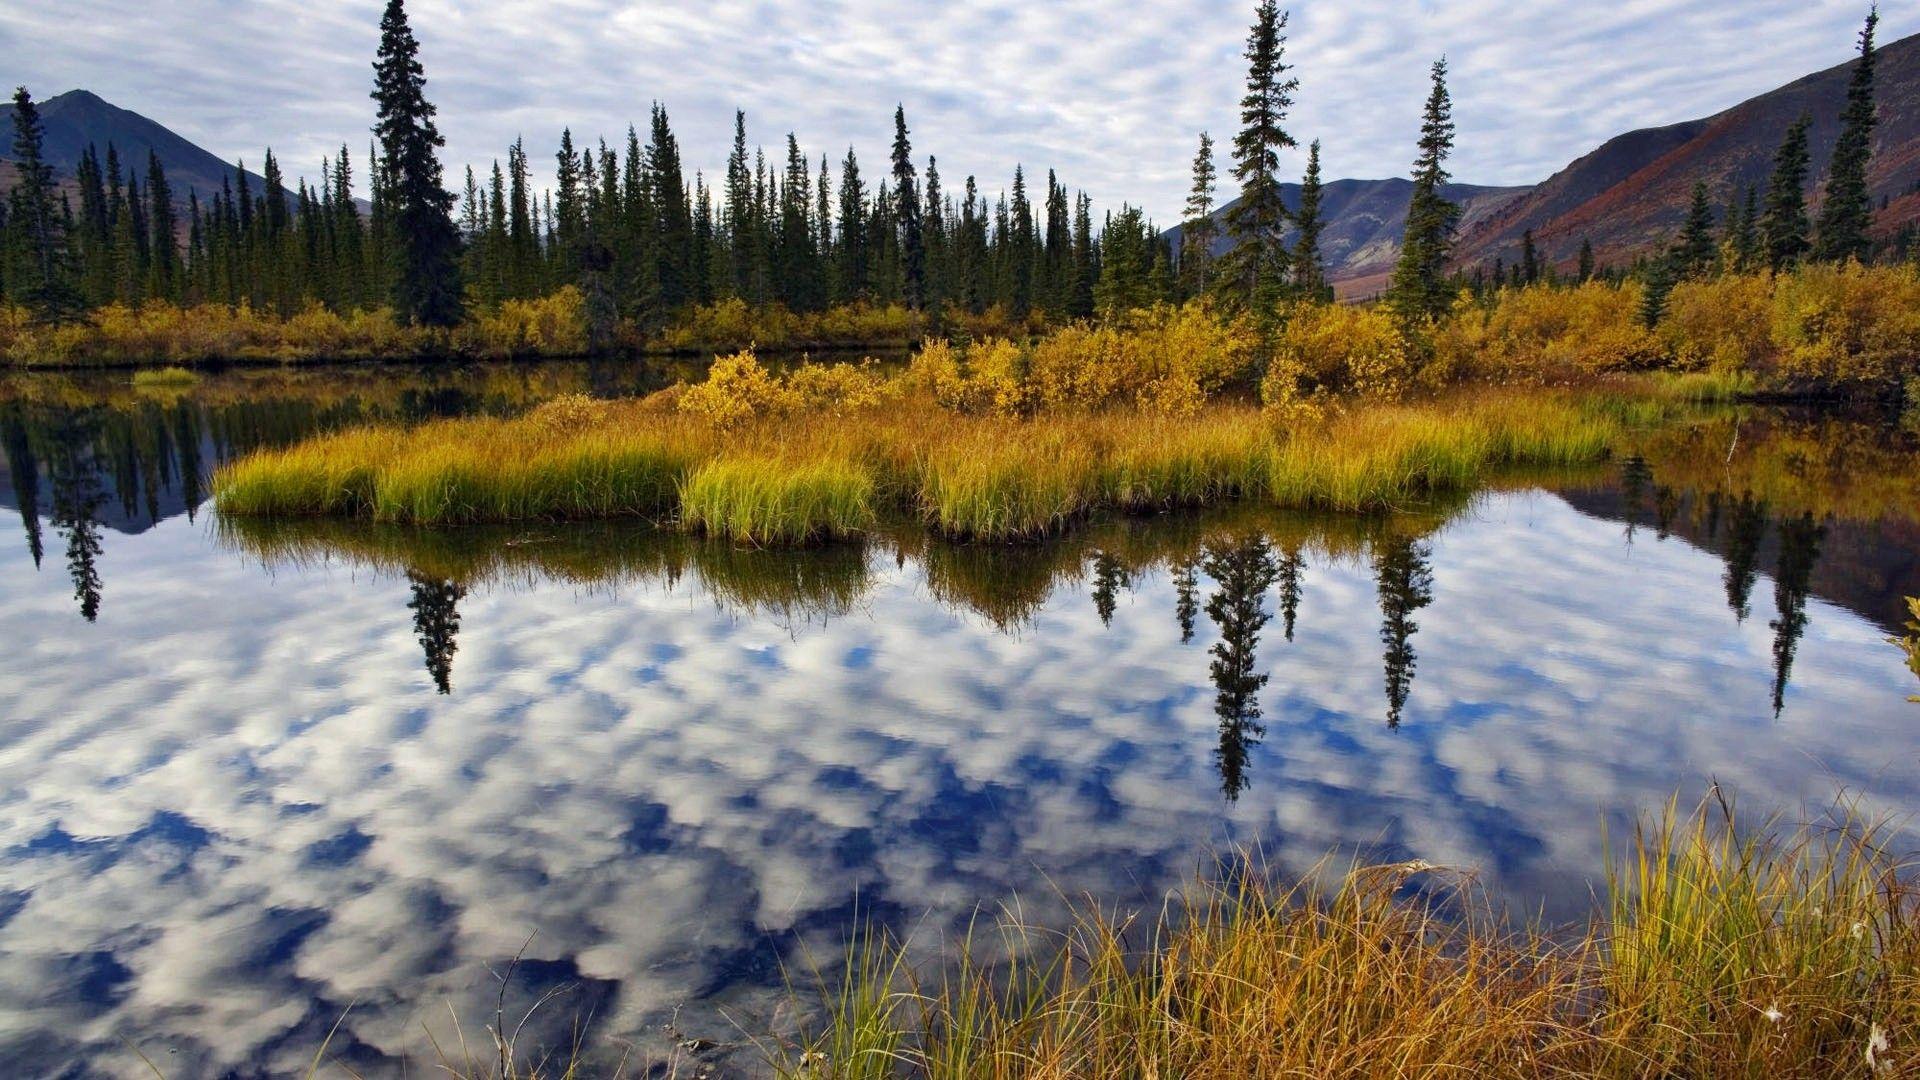 Hình nền Yukon là trải nghiệm tuyệt vời cho những ai yêu thích vùng đất hoang sơ và tuyệt đẹp của Canada. Hãy cùng chiêm ngưỡng những bức tranh tuyệt đẹp và cảm nhận sự lãng mạn của nơi đây.